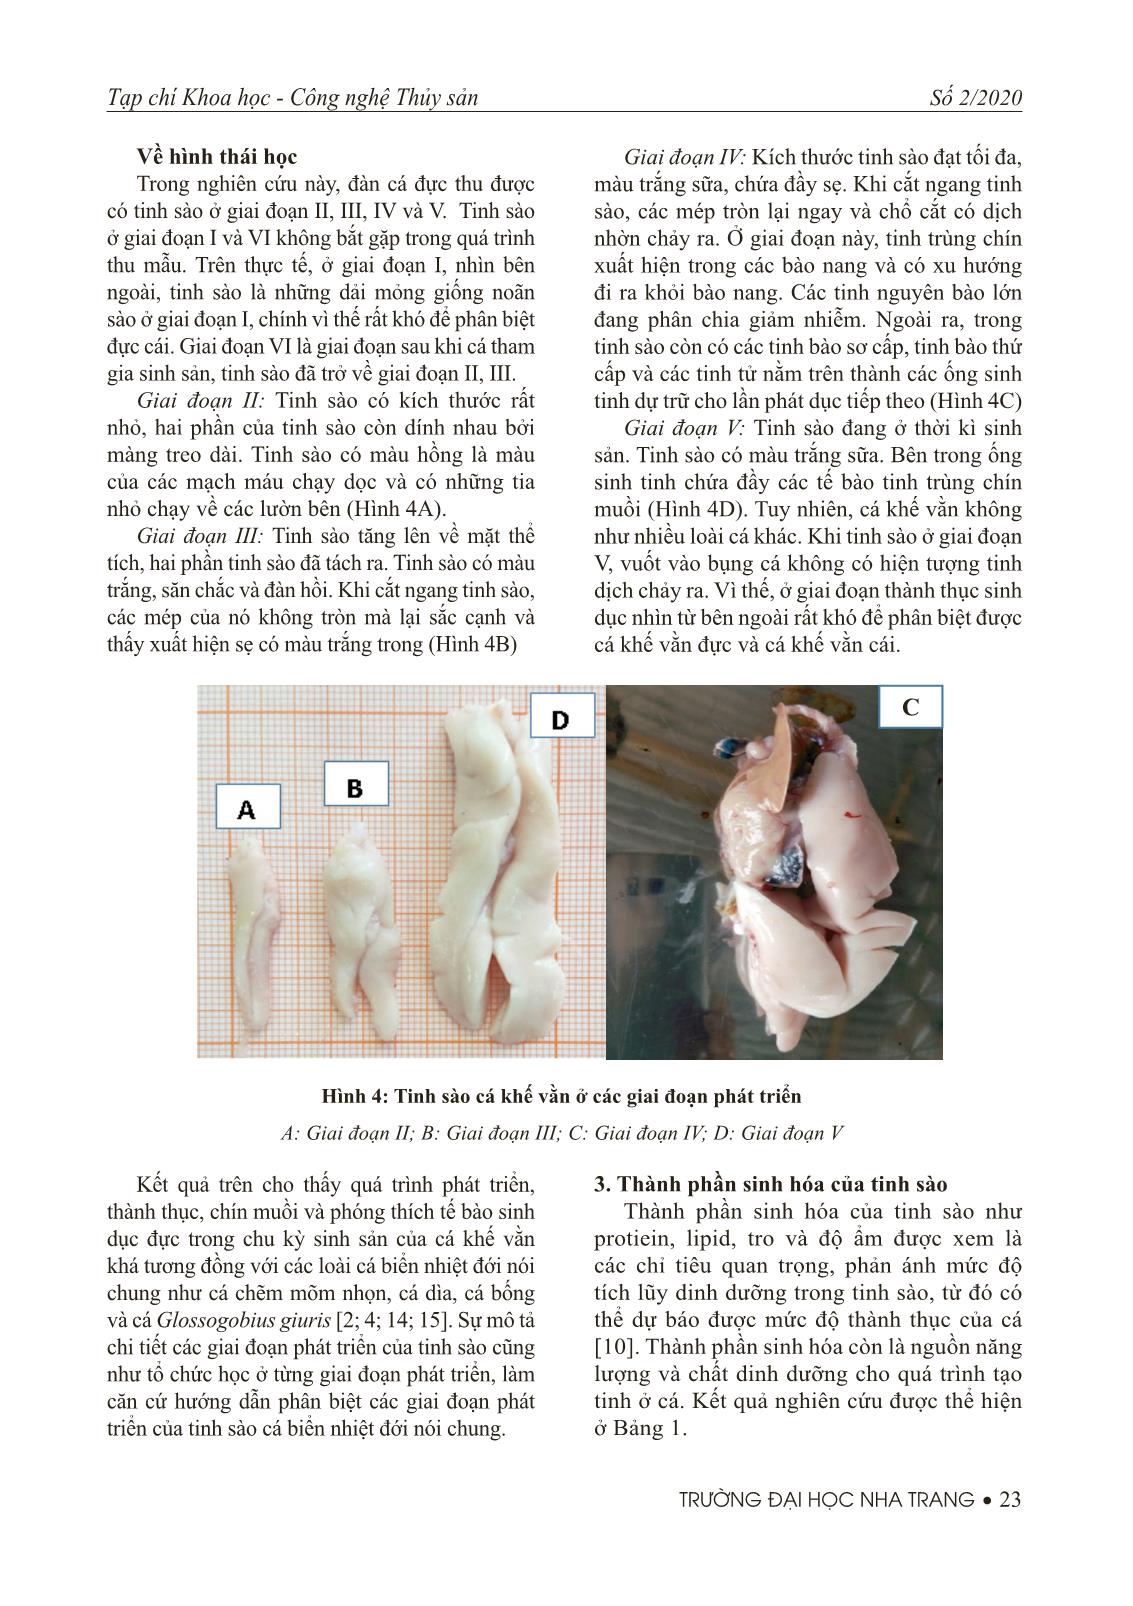 Nghiên cứu đặc điểm sinh học tinh sào cá khế vằn (Gnathanodon speciosus) trang 5